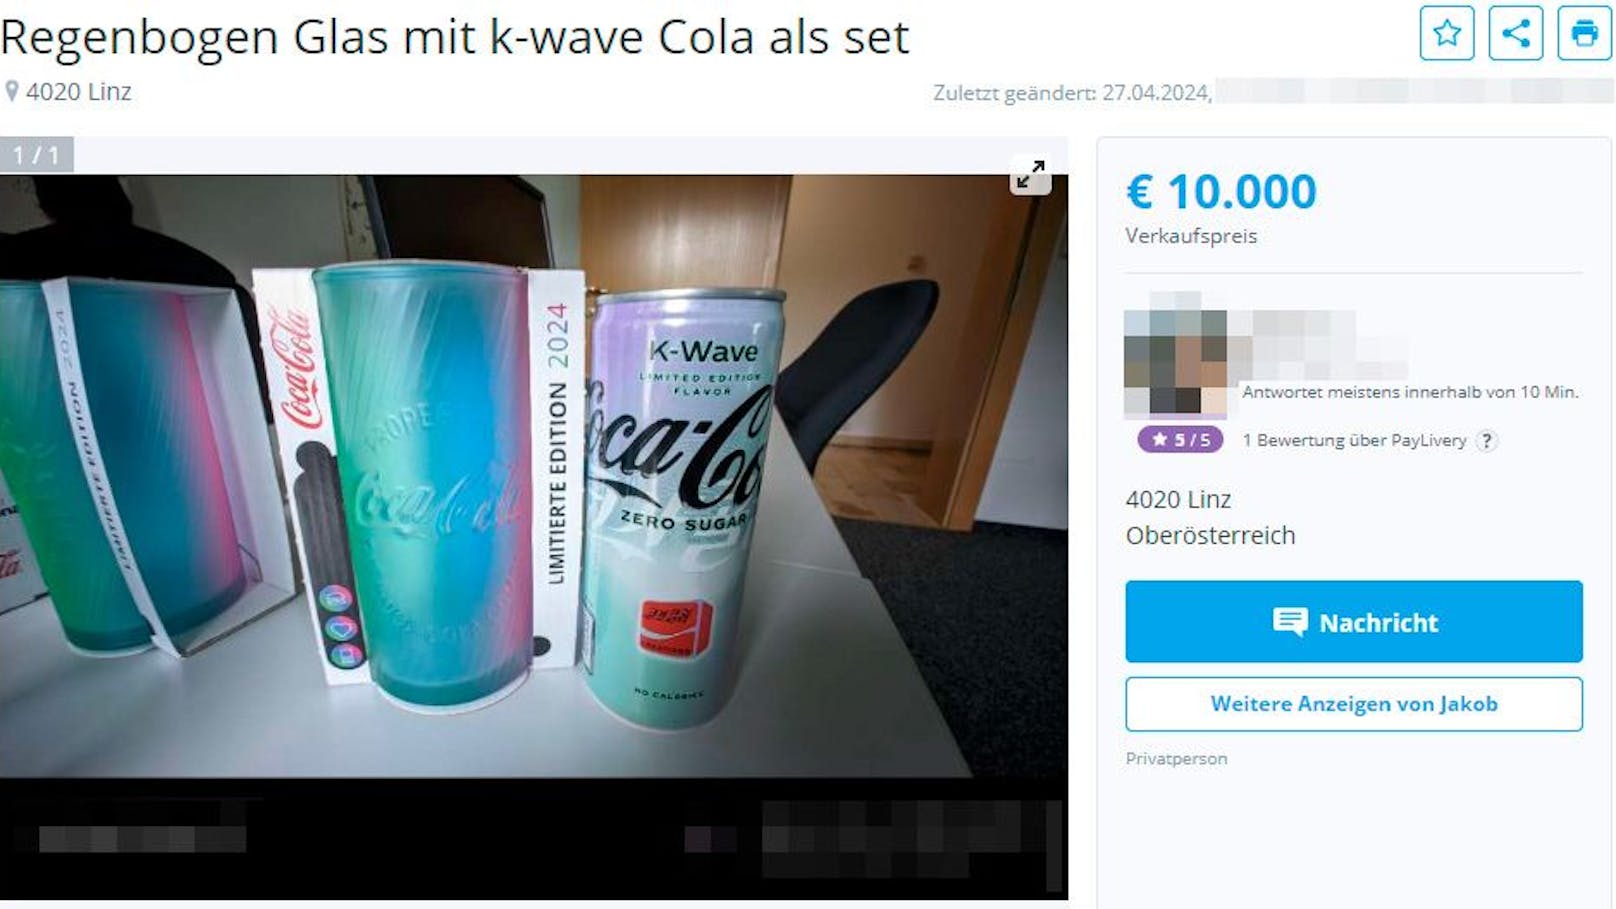 Unglaublich! Mann will für Cola und Glas 10.000 Euro